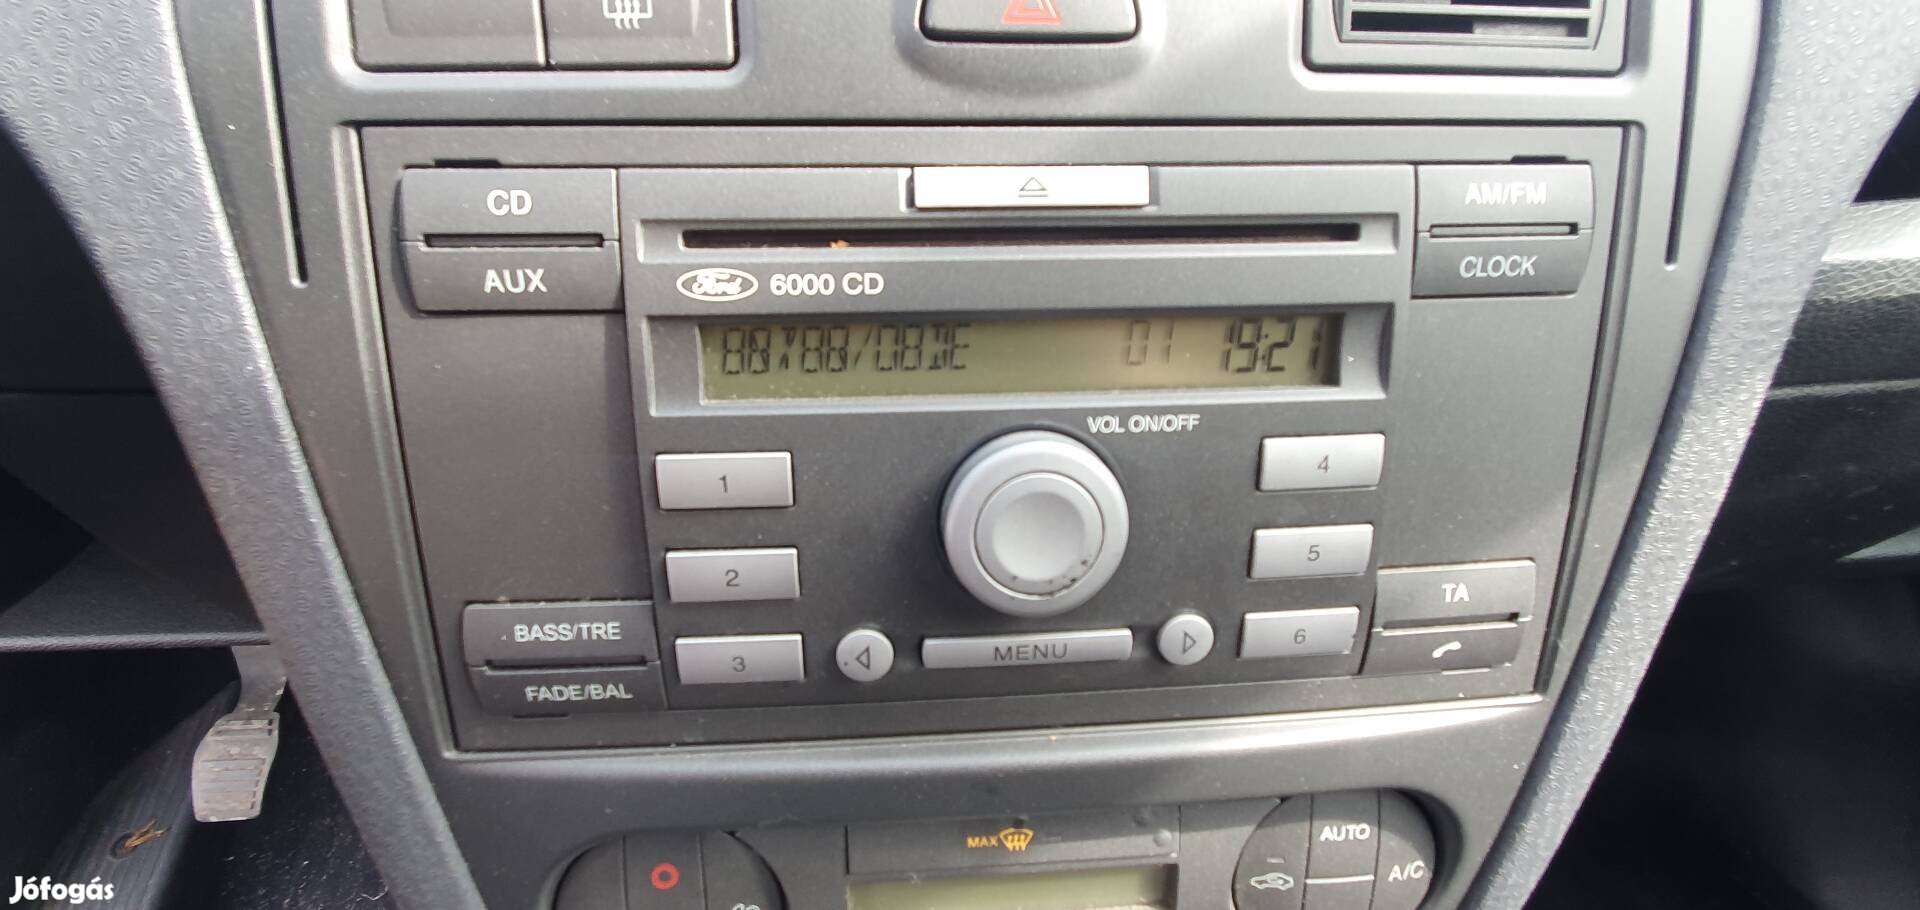 Ford Fusion 6000 cd gyári rádio